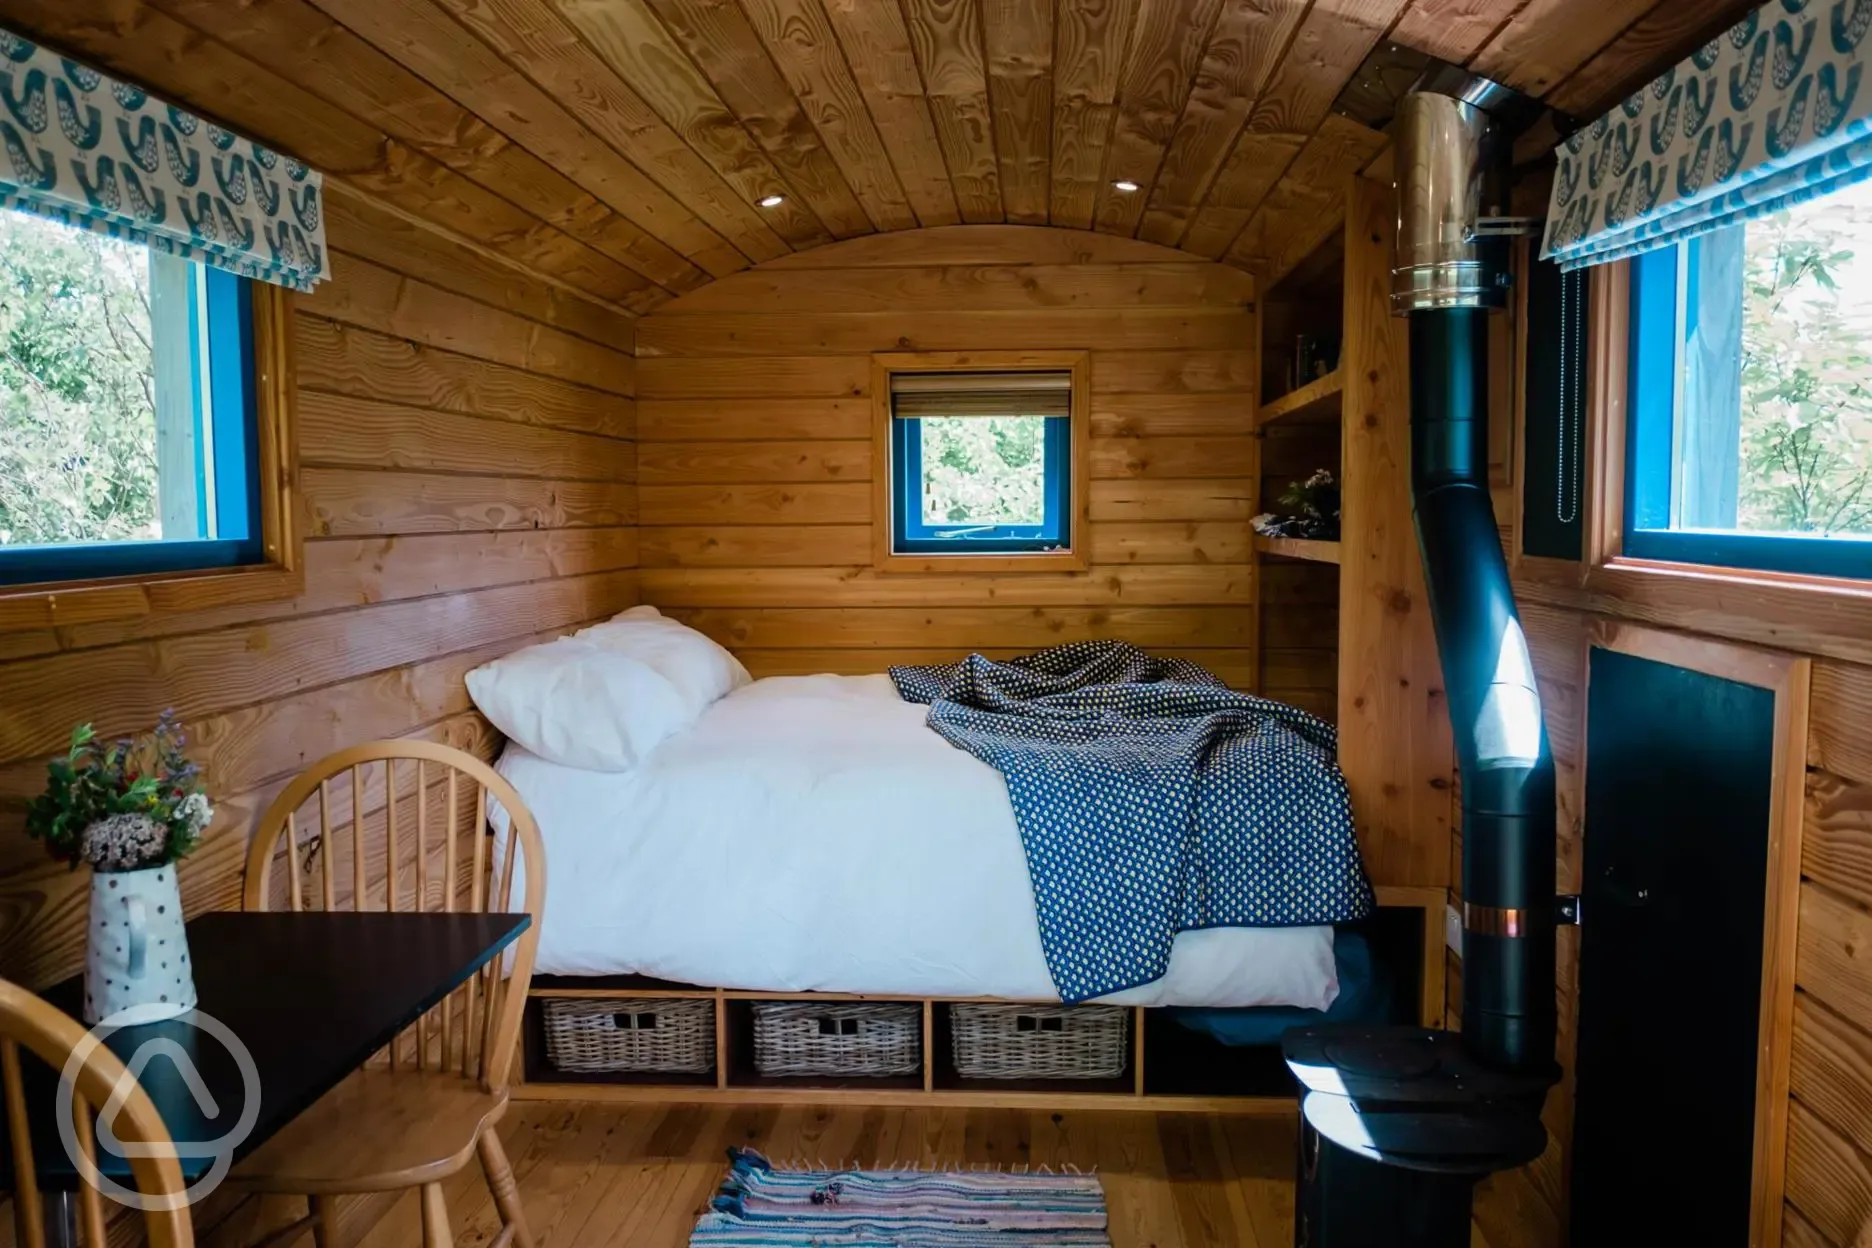 Small woods shepherd's hut interior